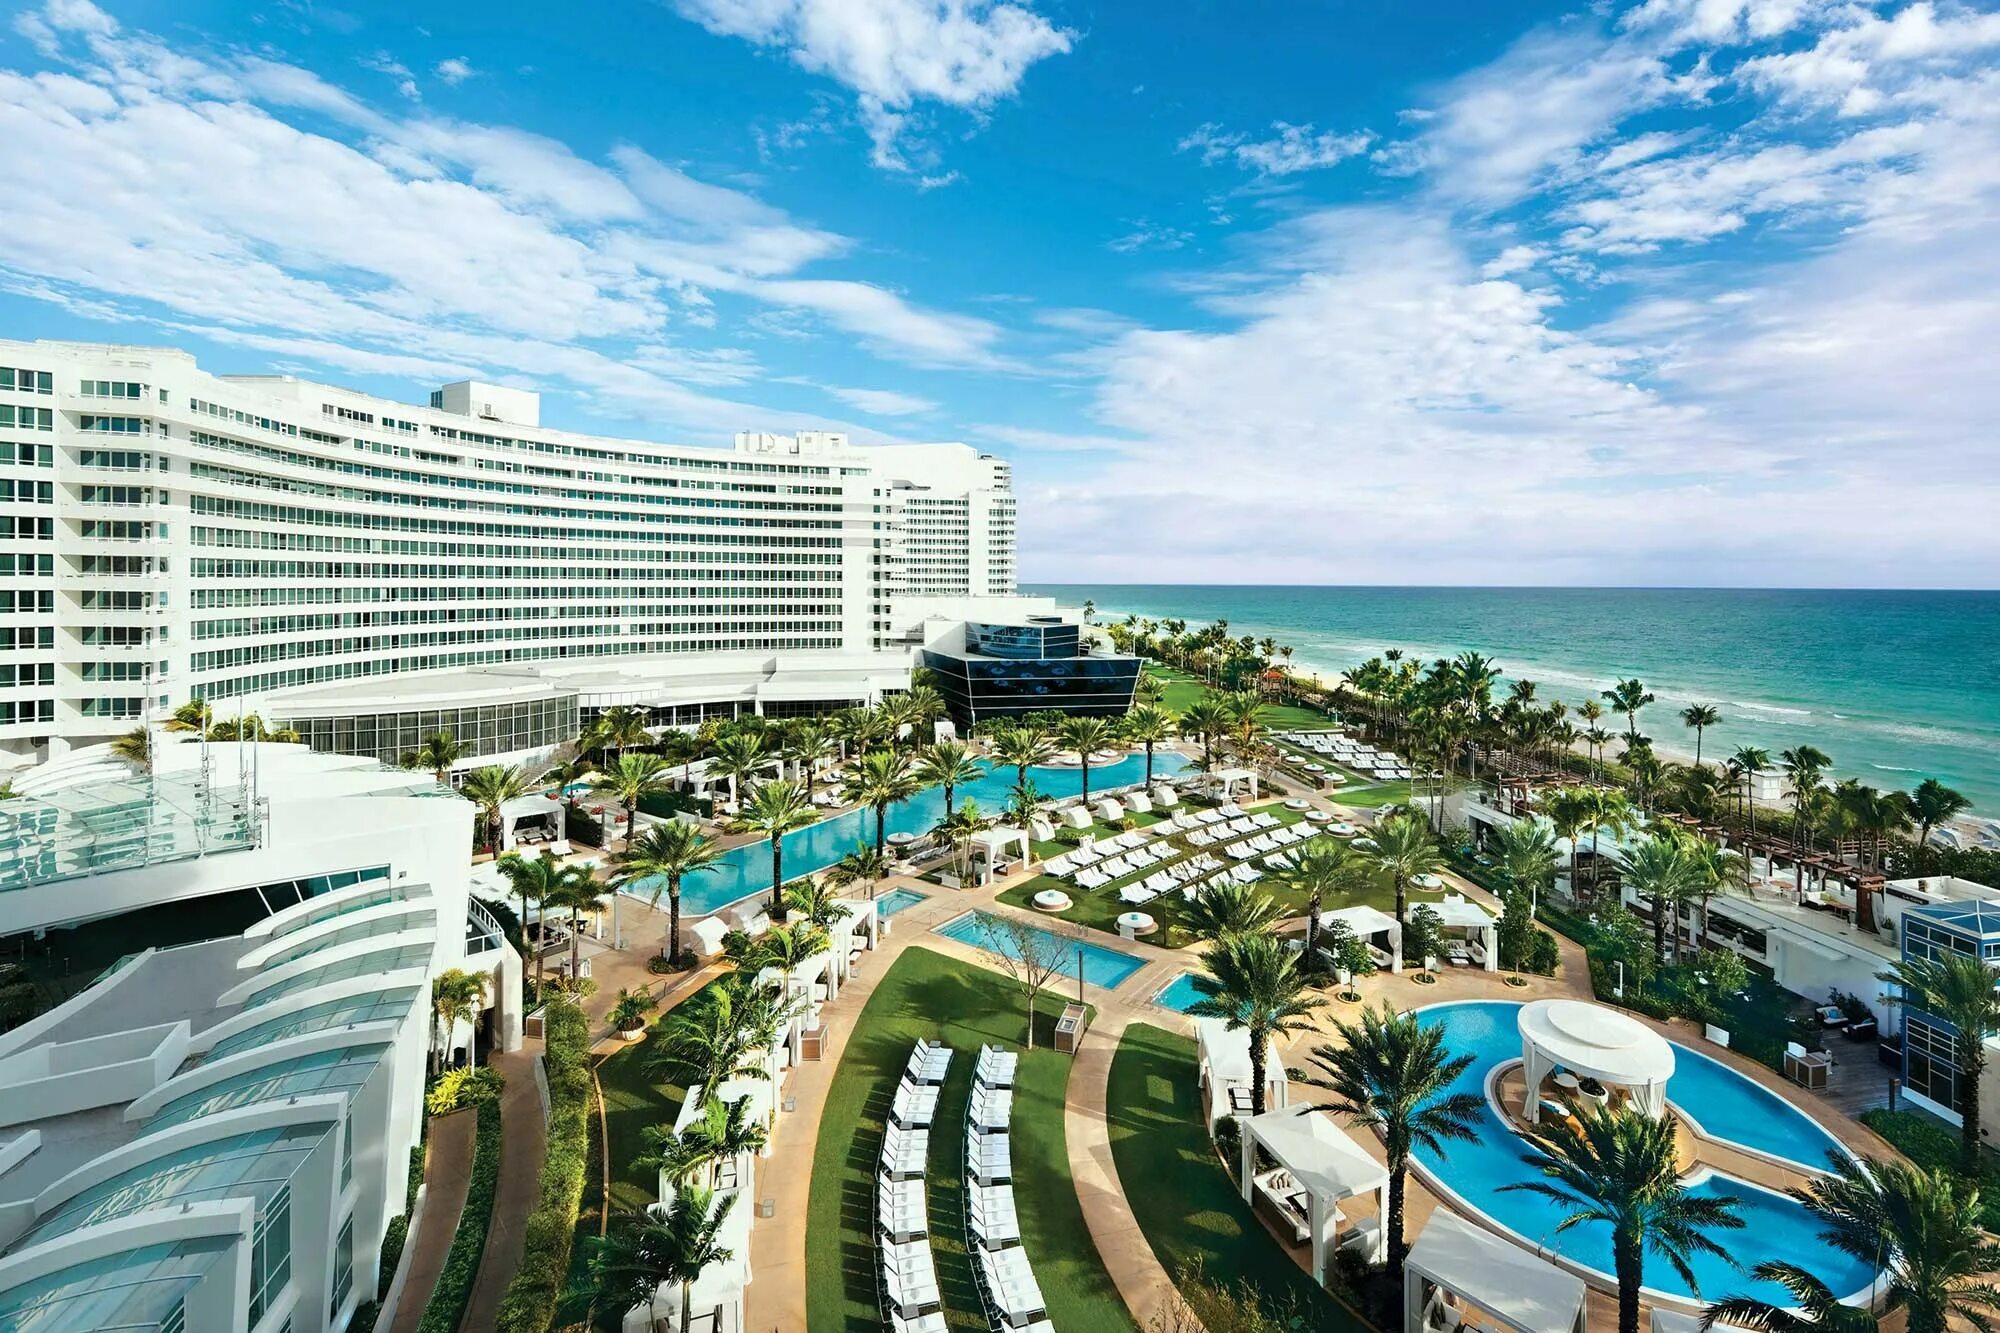 Купить путевку в маями. Отель Майами Бич в Майами. "Фонтенбло Майами Бич". Fontainebleau Hotel Флорида. Отель Мирамар Майами.